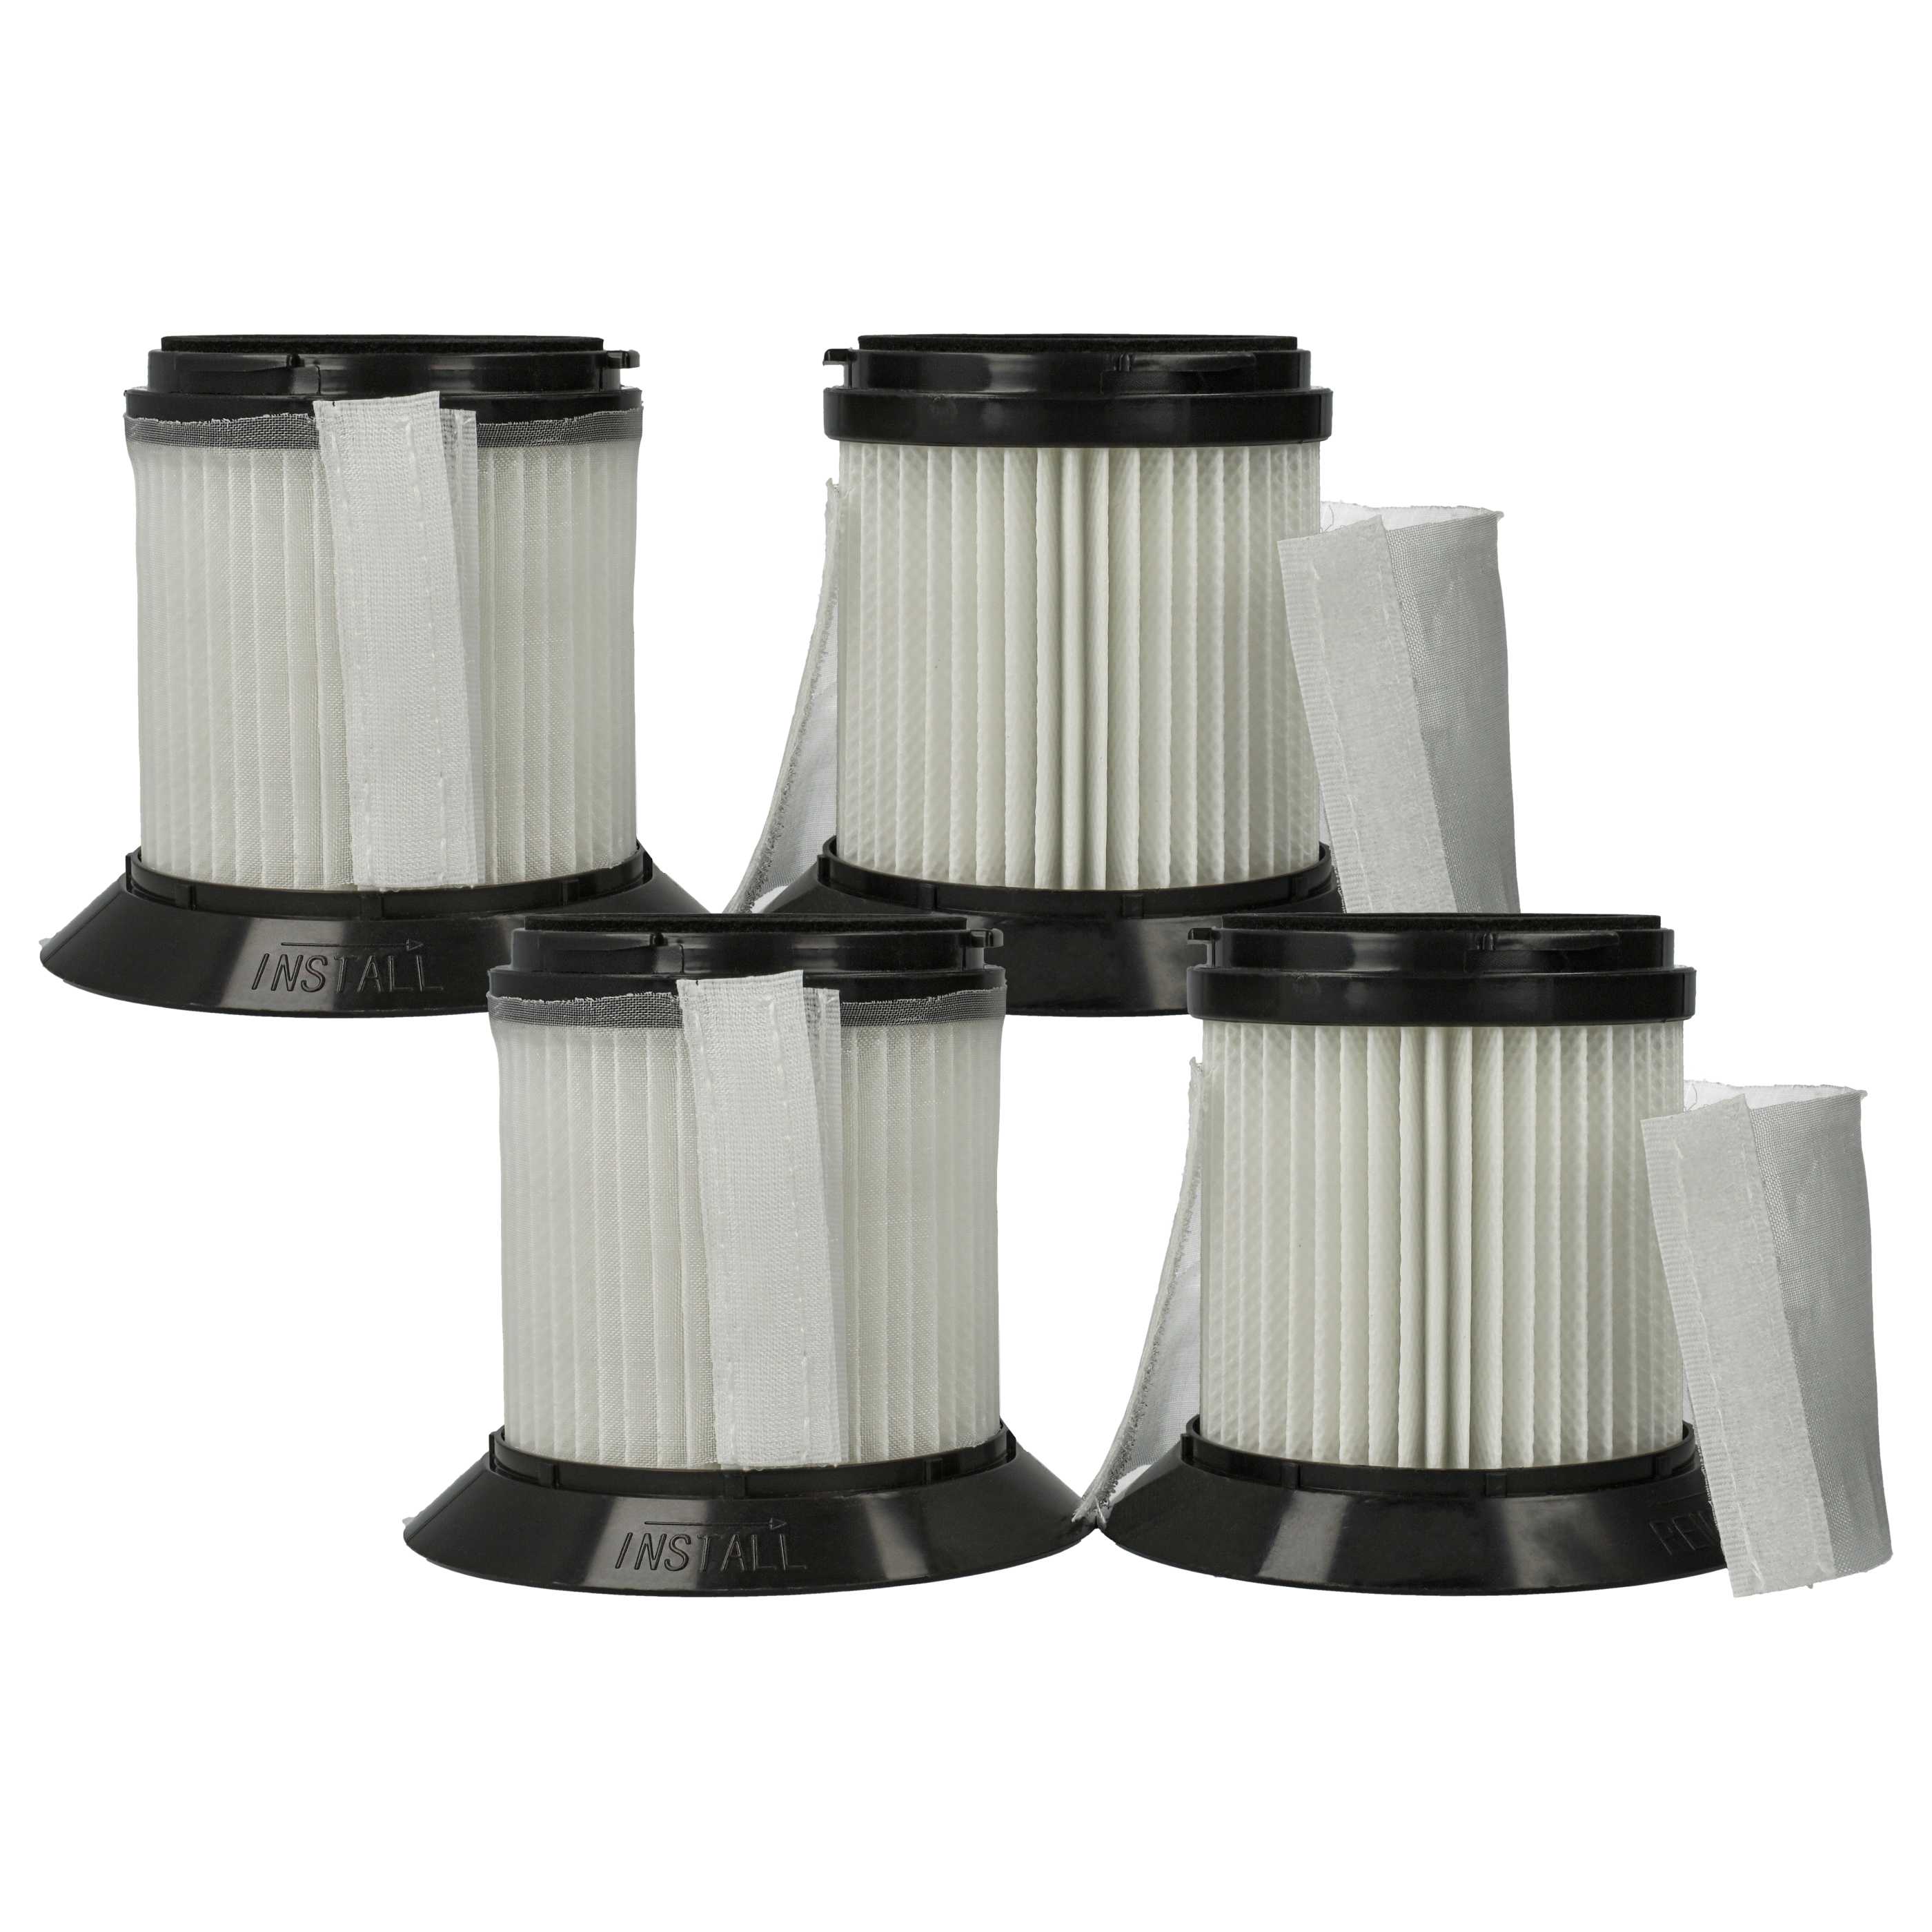 4x Filtro per aspirapolvere Sichler Zyklon BLS-200 - filtro HEPA, nero / bianco